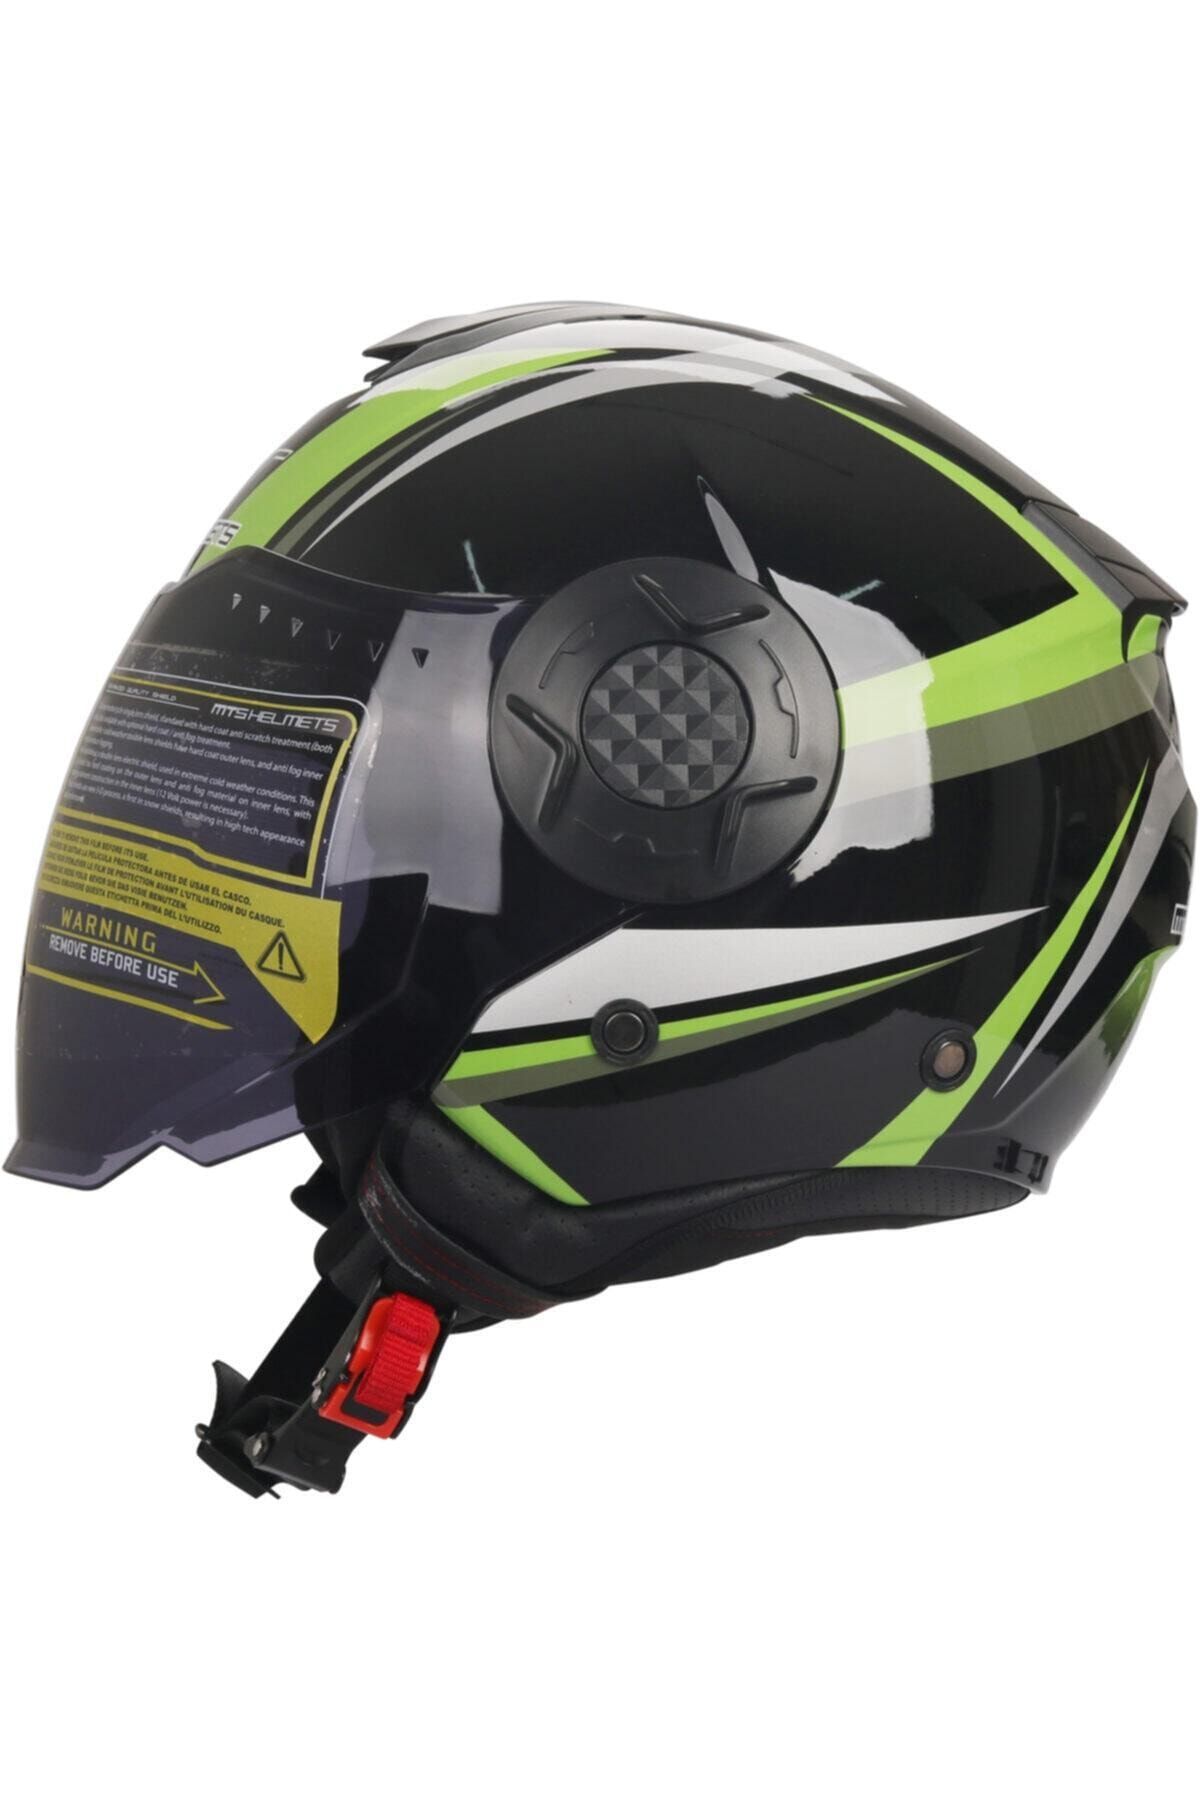 RSV M.t.s. Helmets Mts-625 Güneş Vizörlü